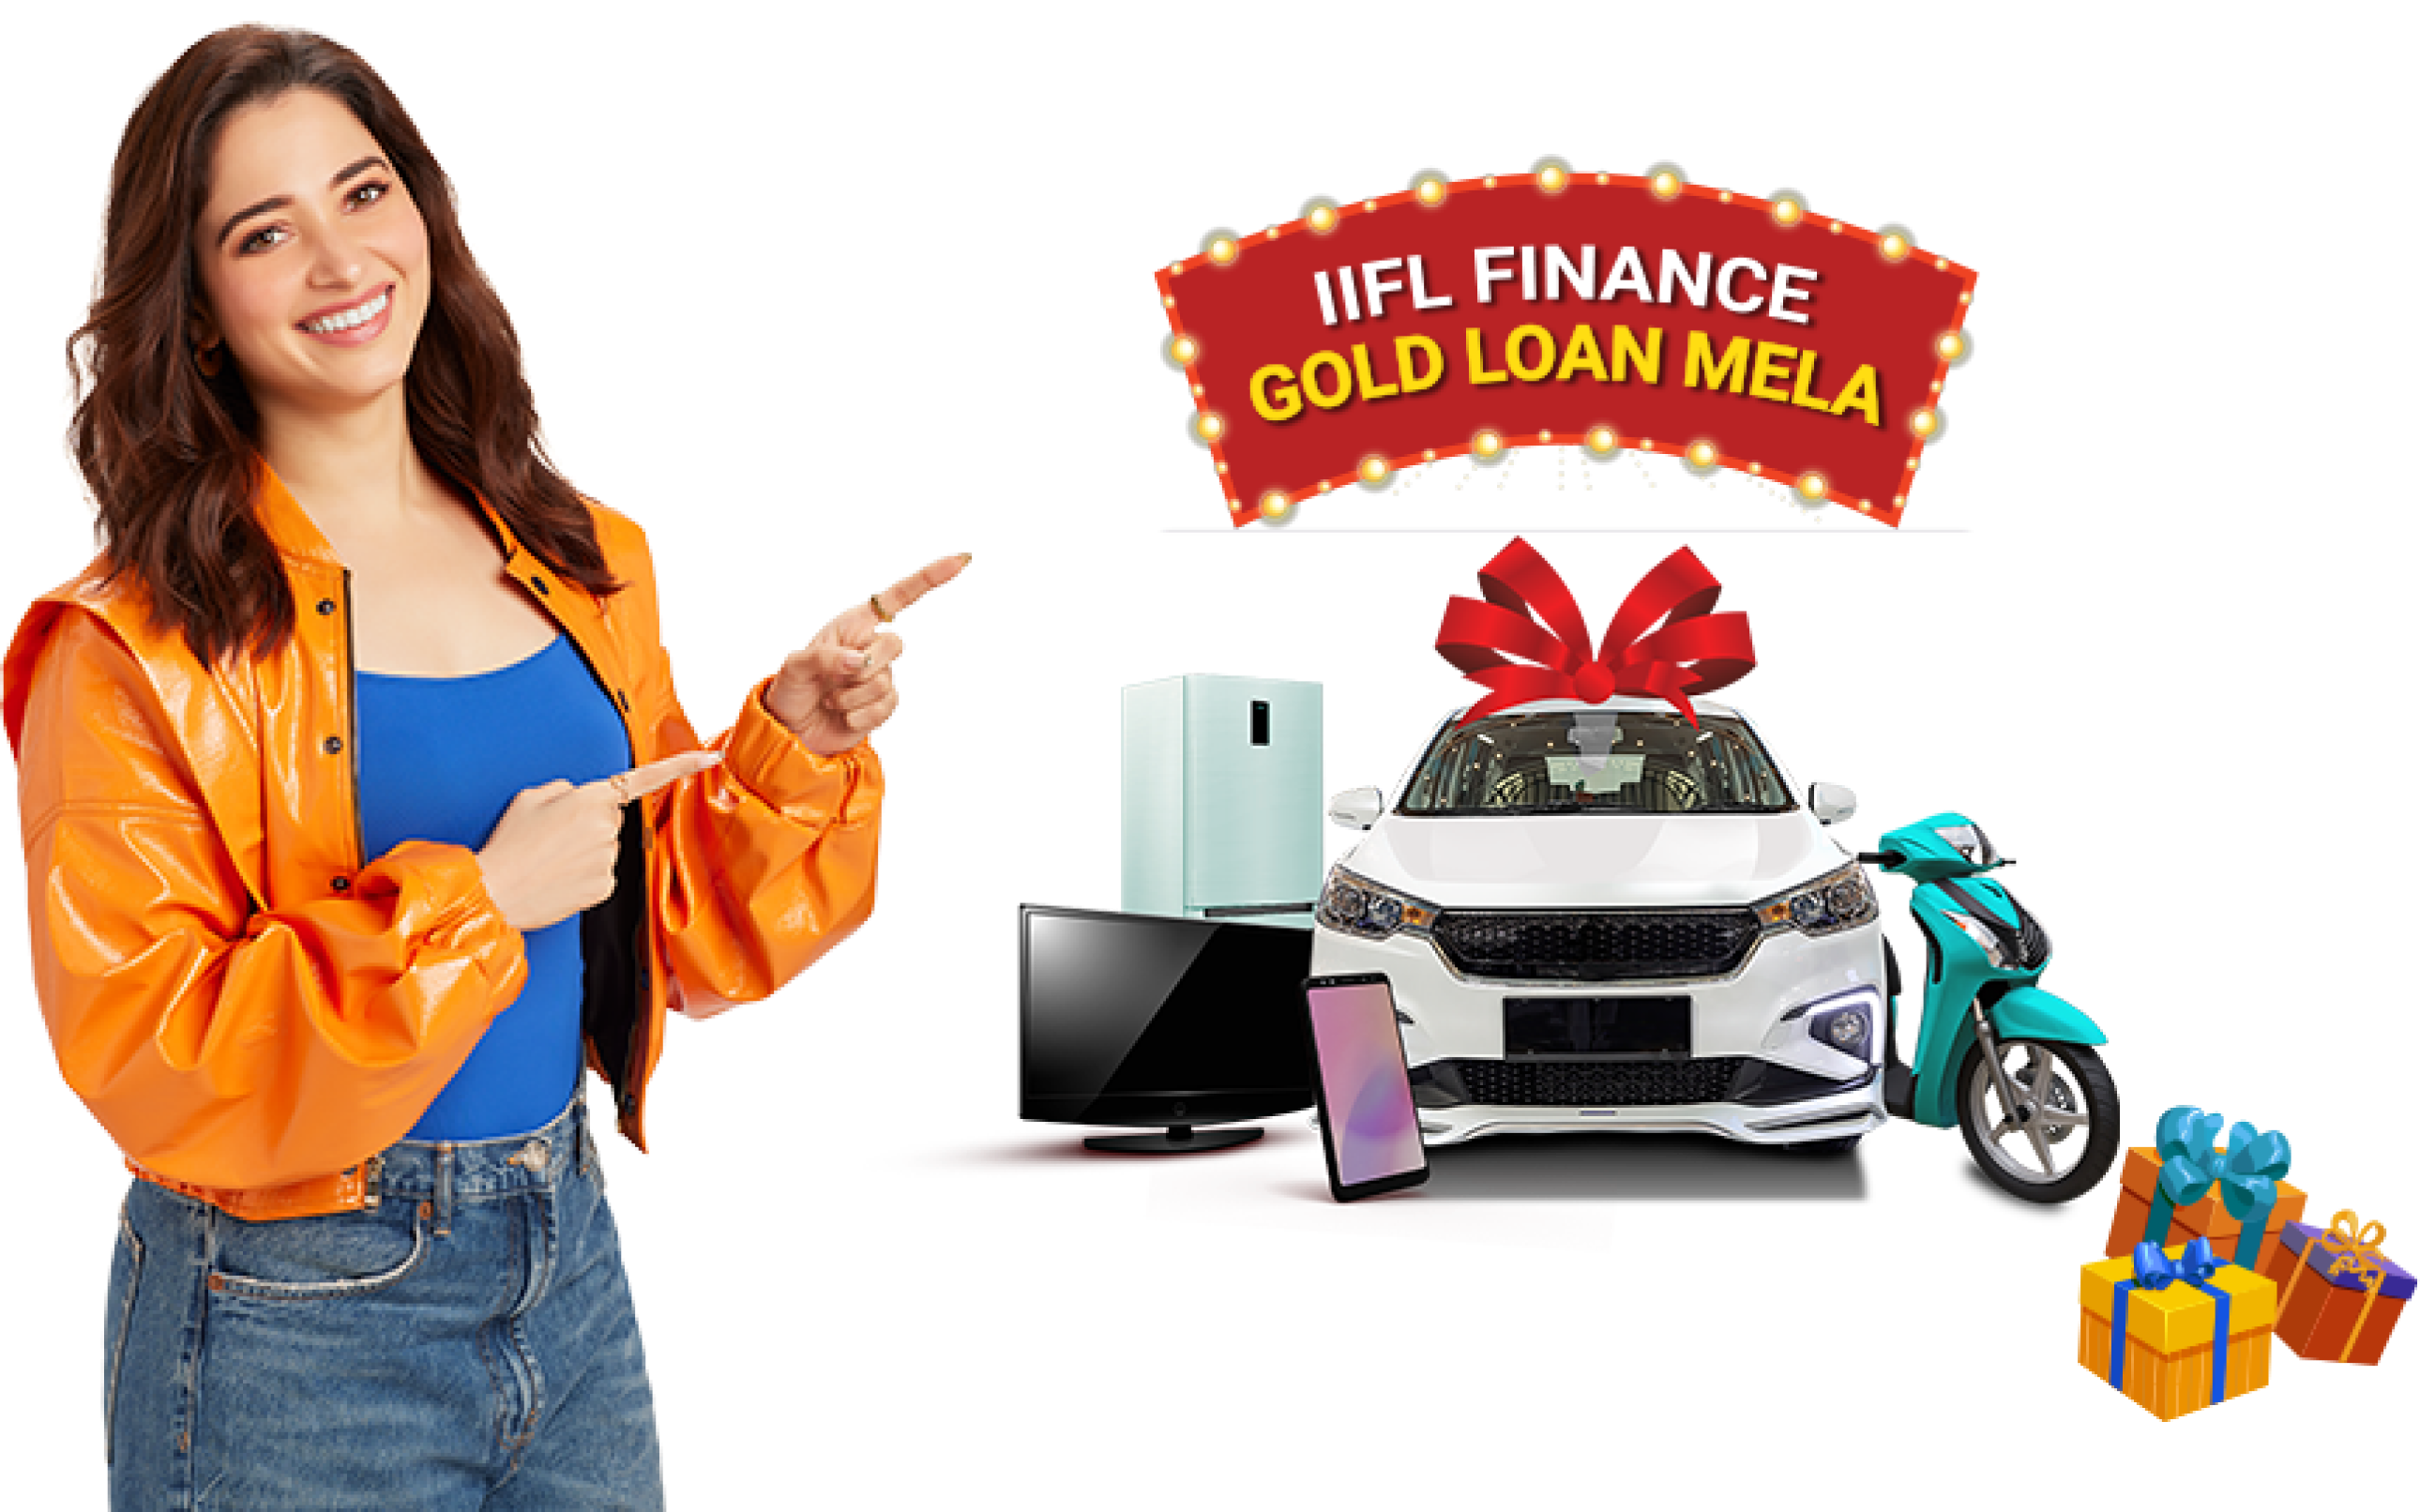 IIFL Finance Gold Loan Mela